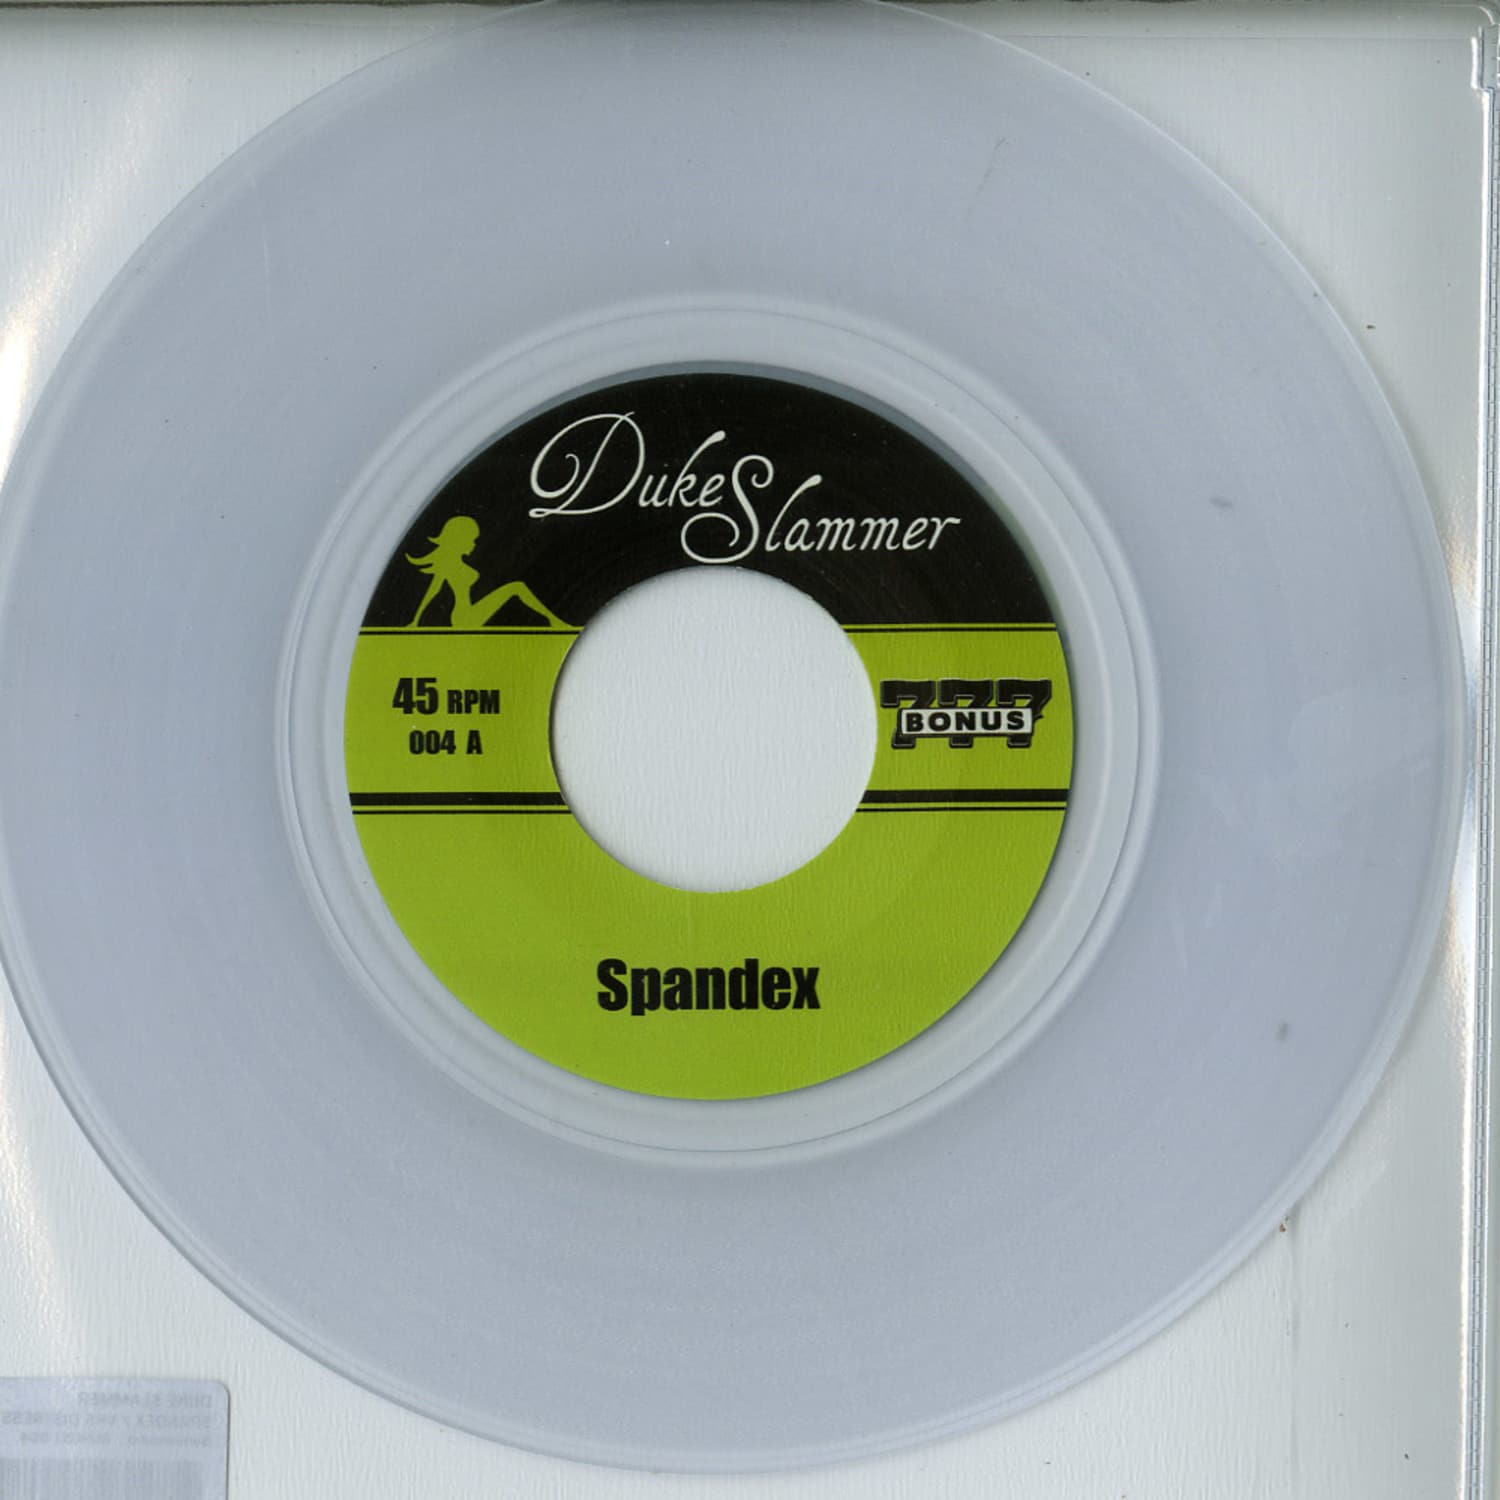 Duke Slammer - SPANDEX / VHS DISTRESS 